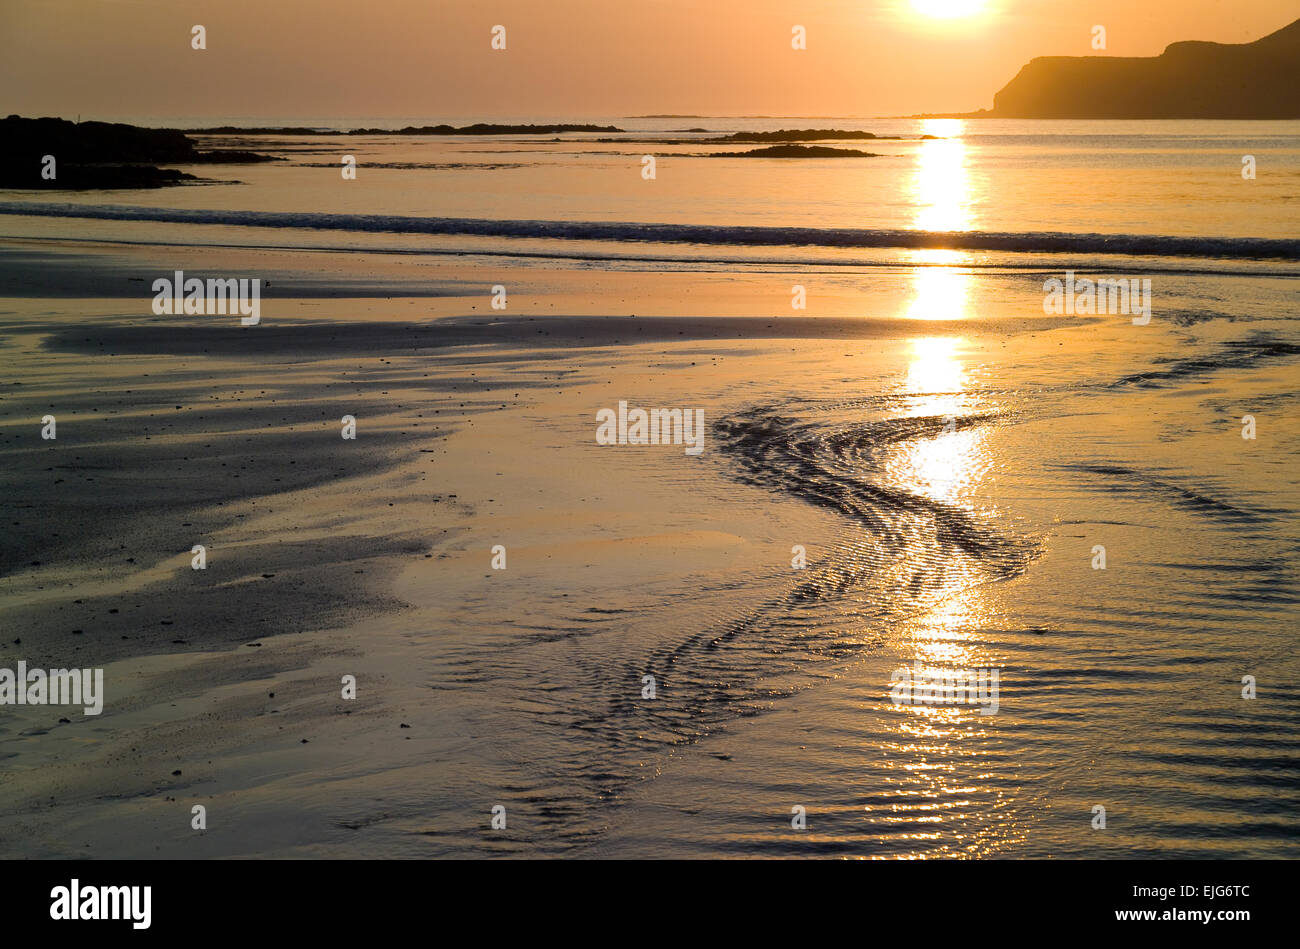 sunset at calgary bay isle of mull Stock Photo